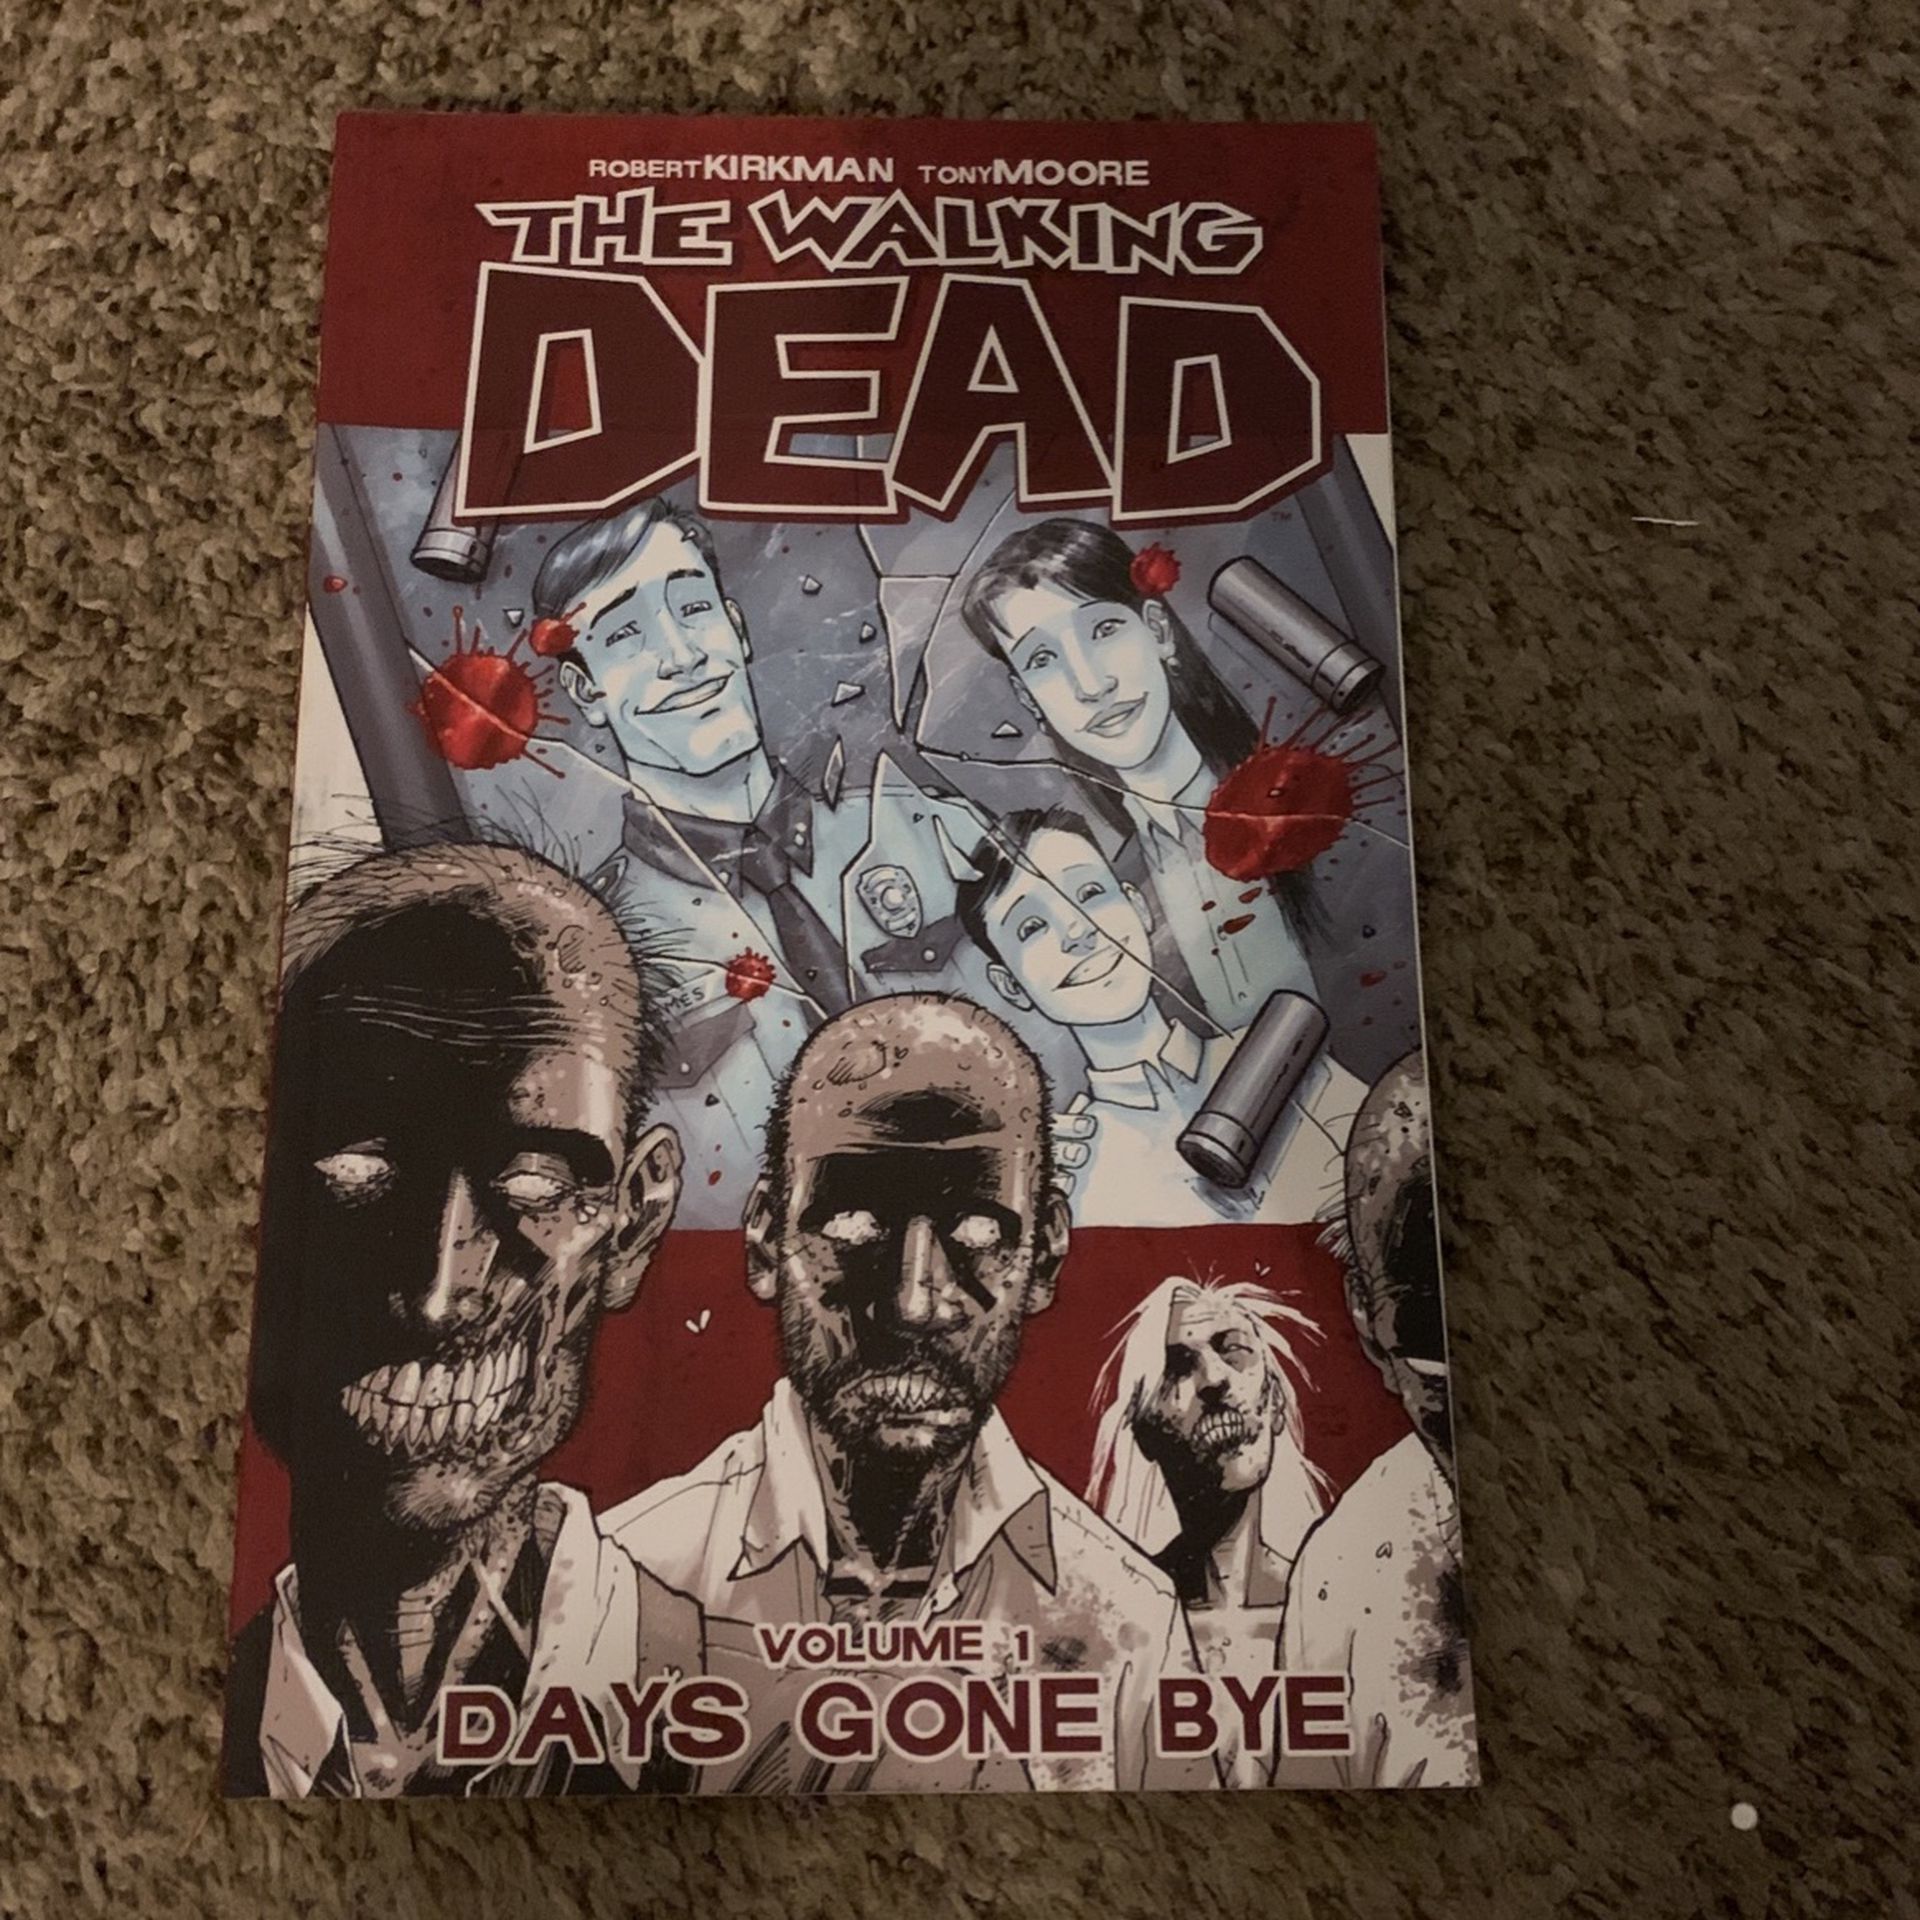 The Walking Dead Volume 1